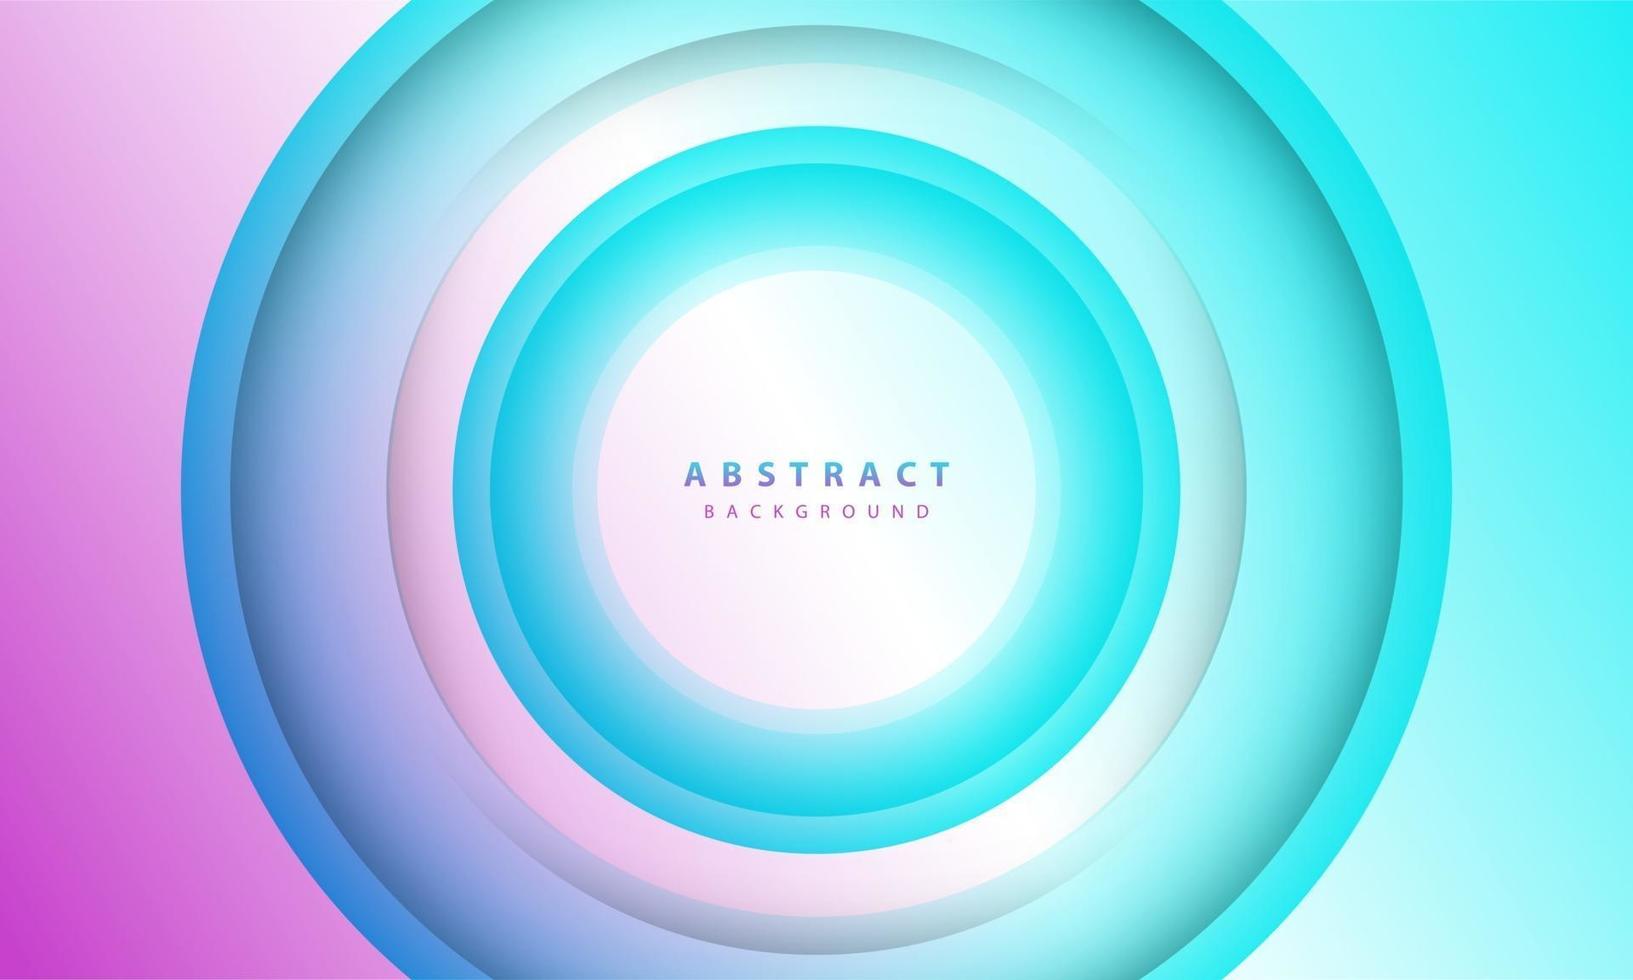 fondo degradado. papel de círculo abstracto cortado composición de color suave. vector